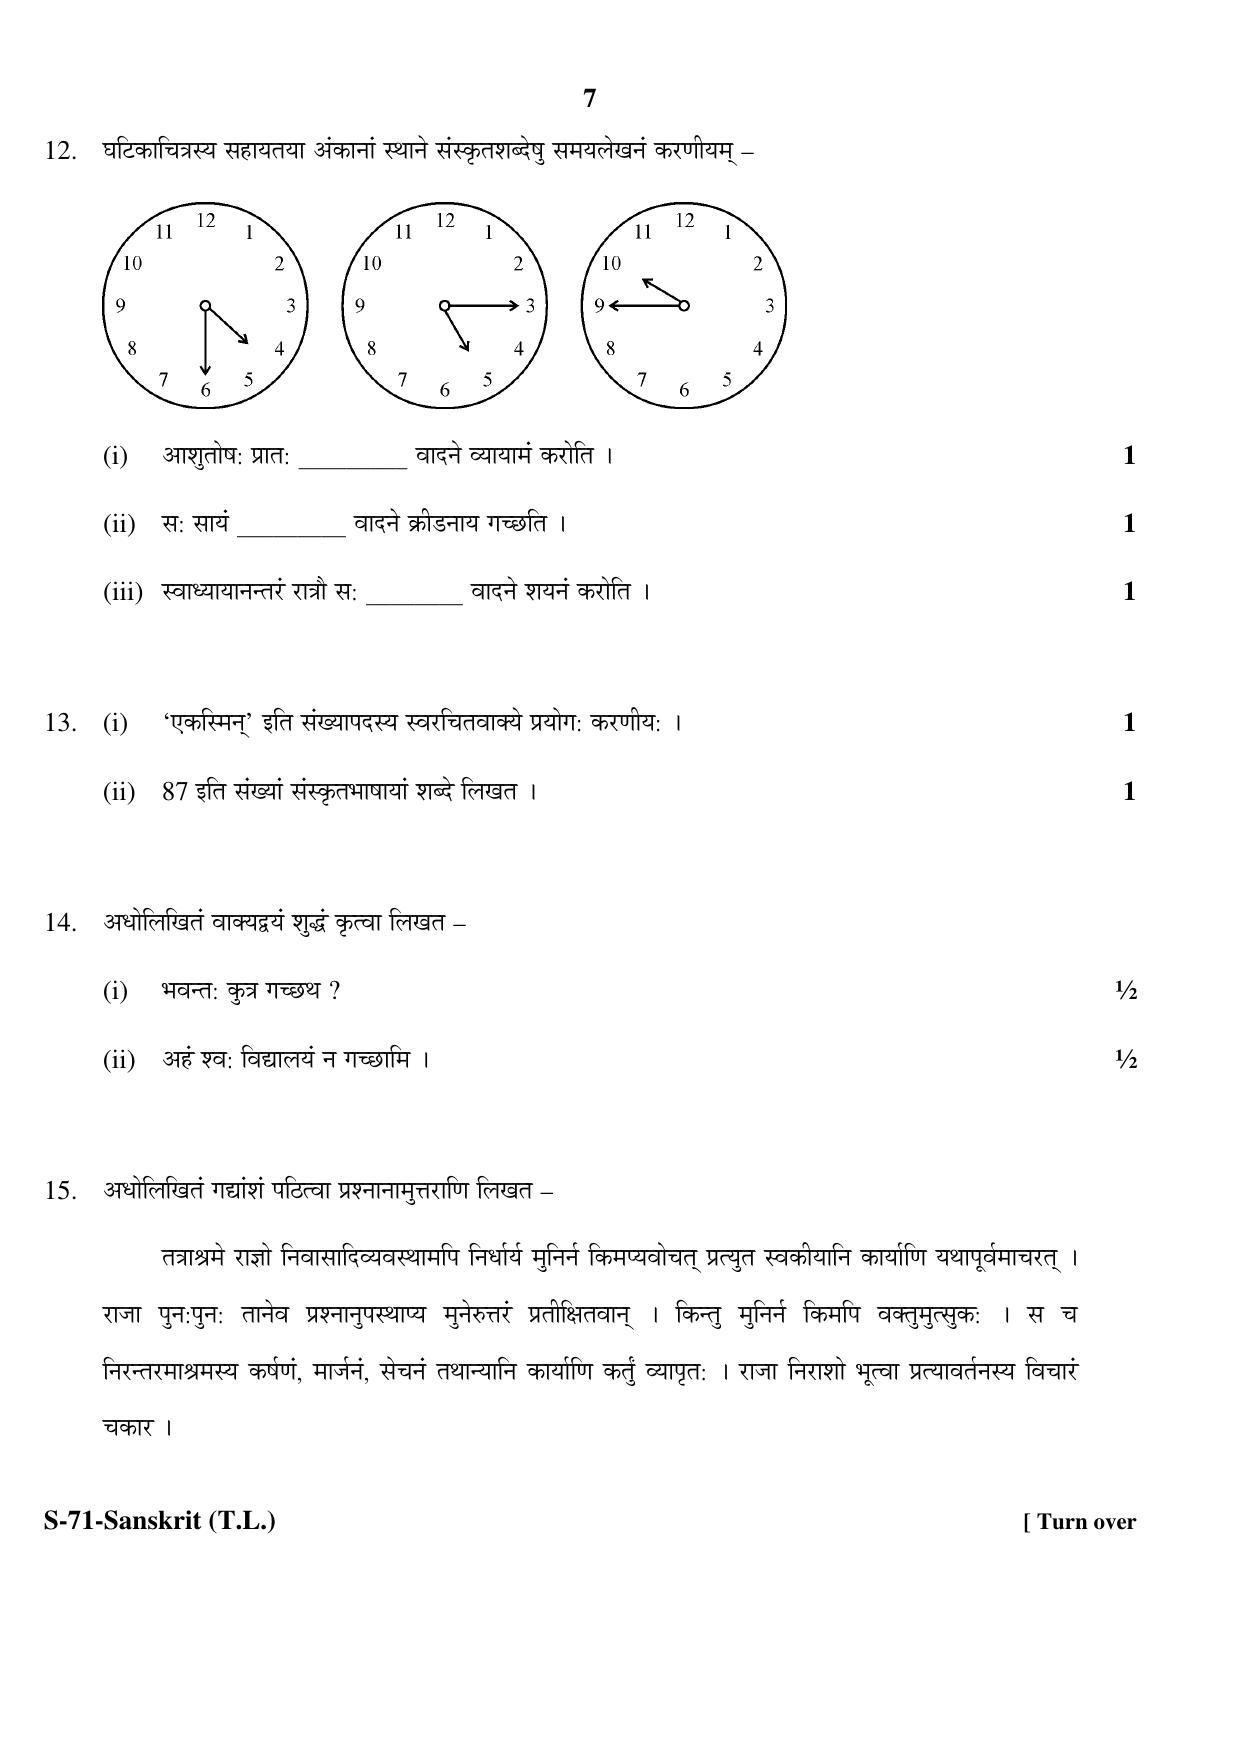 RBSE Class 10 Sanskrit (T.L.) 2017 Question Paper - Page 7